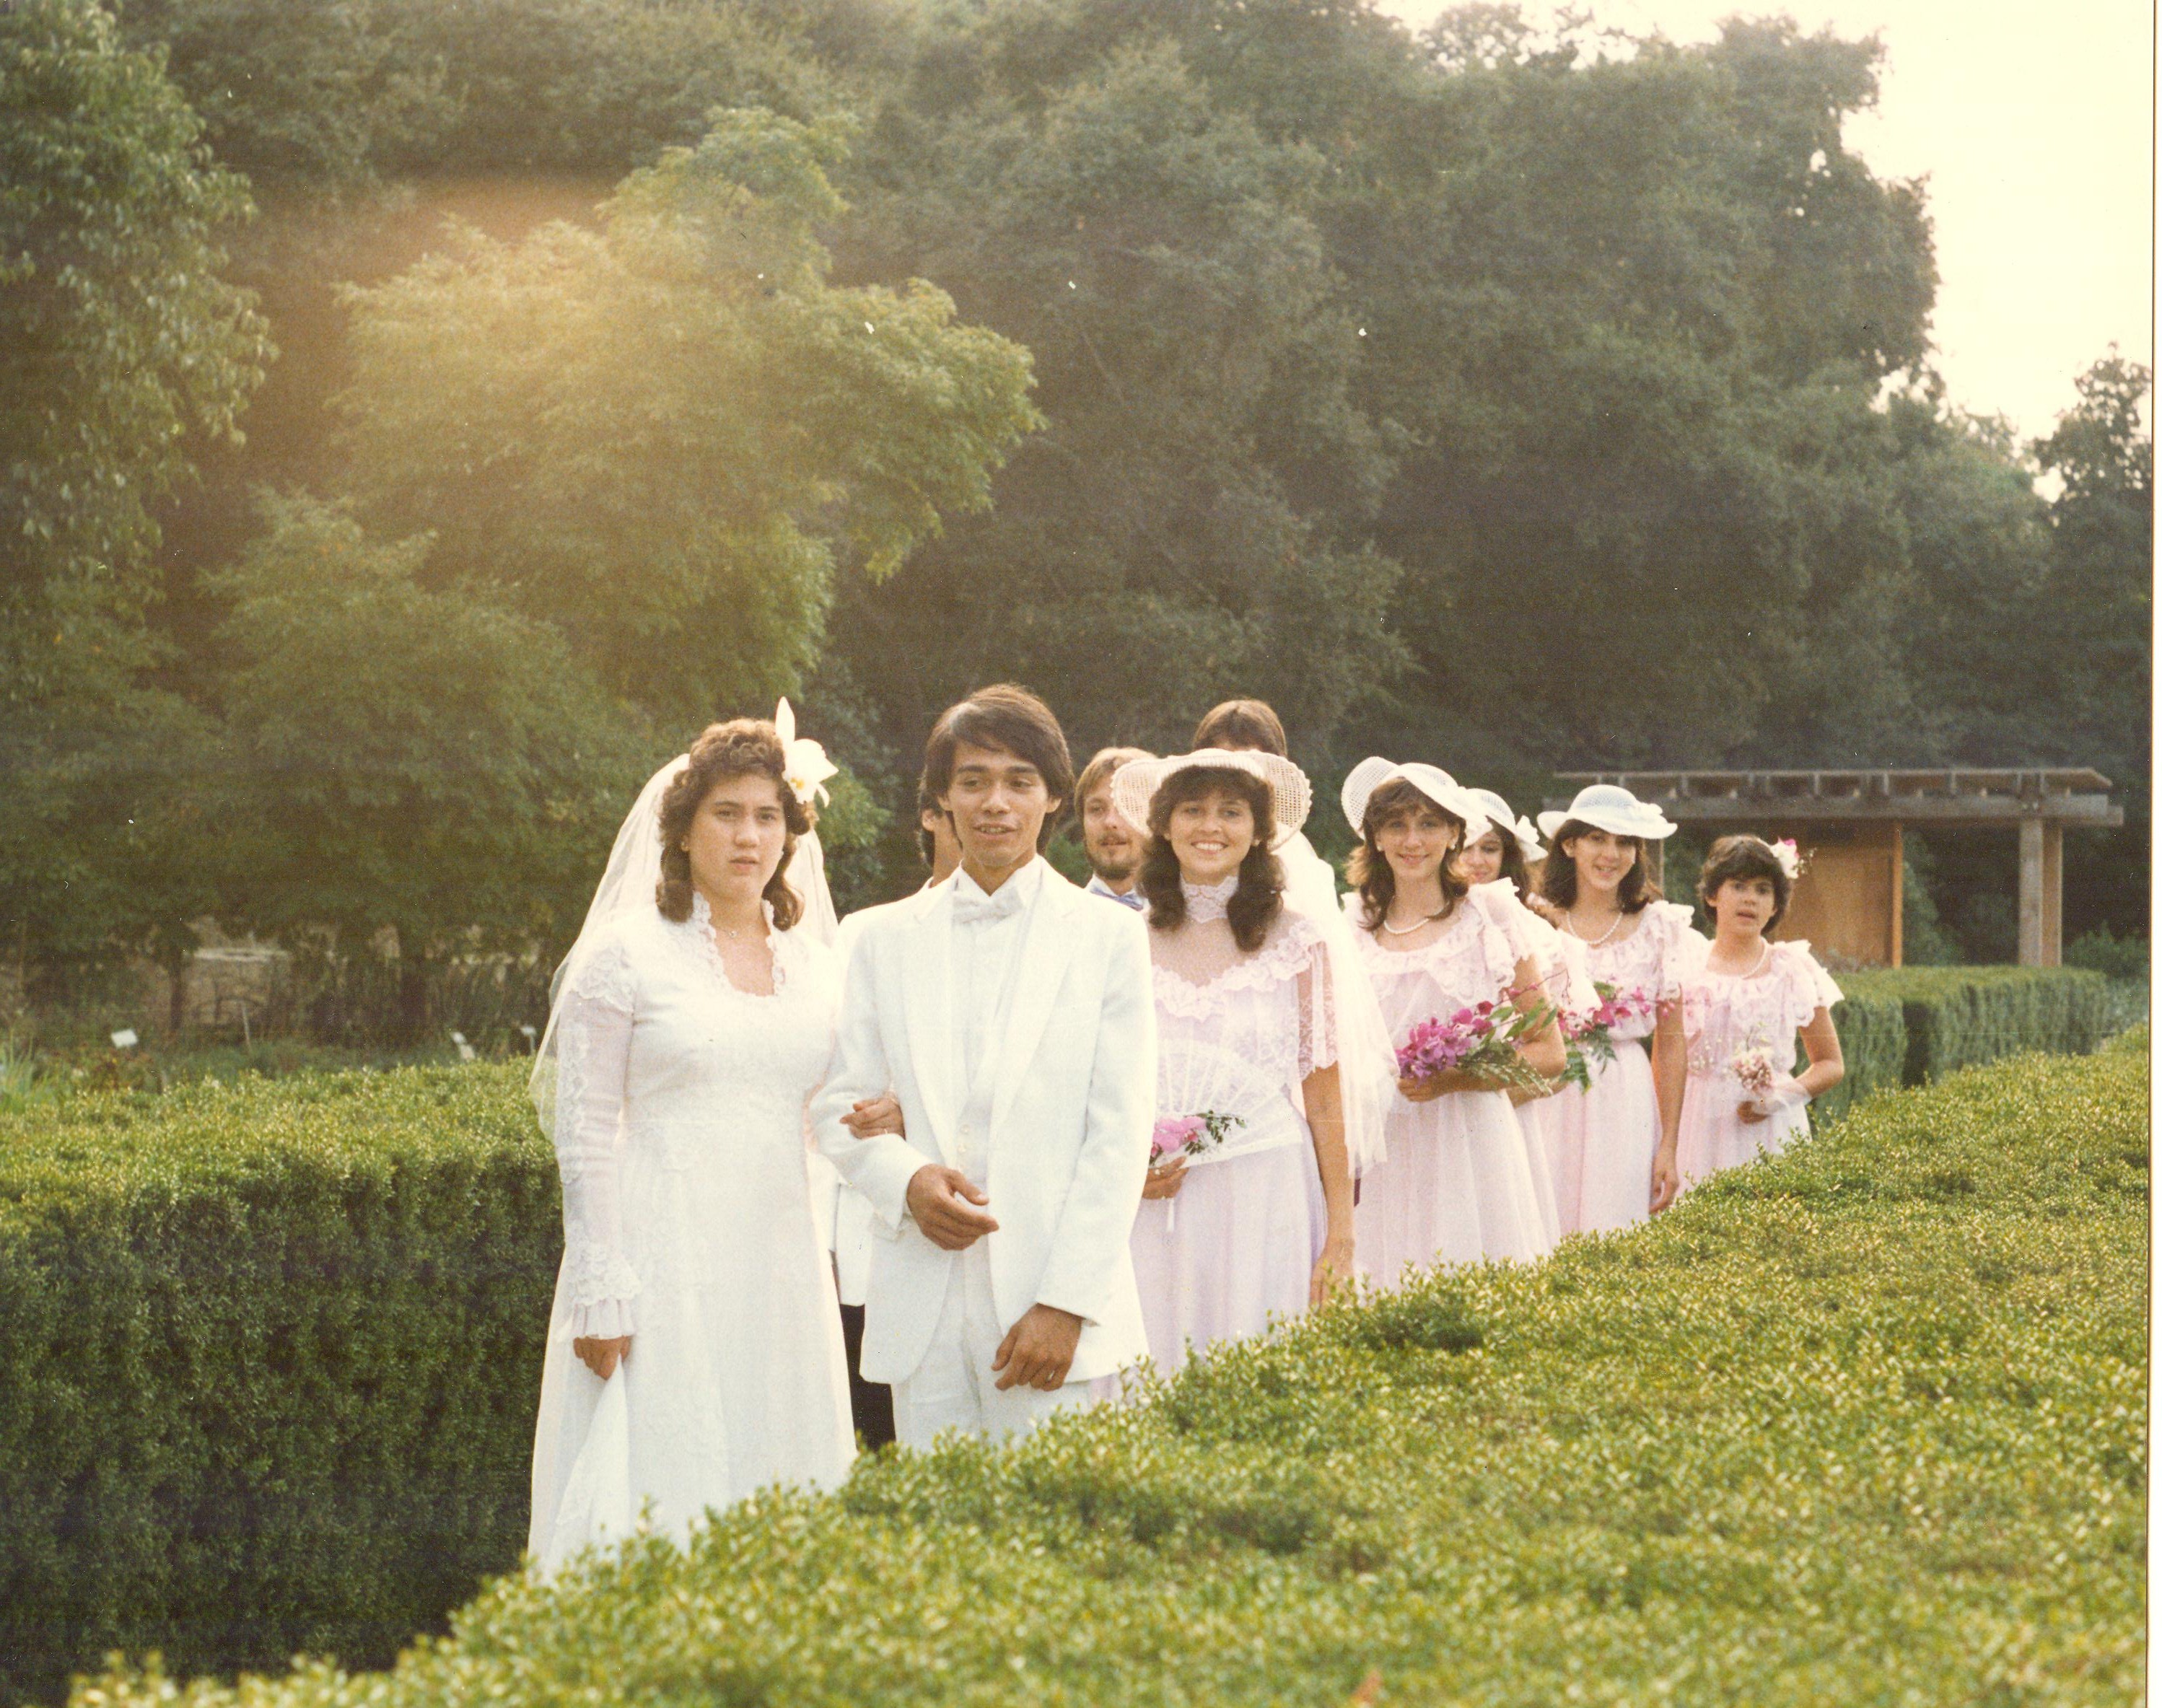 de Quilettes: Our Wedding Party 10.16.1983